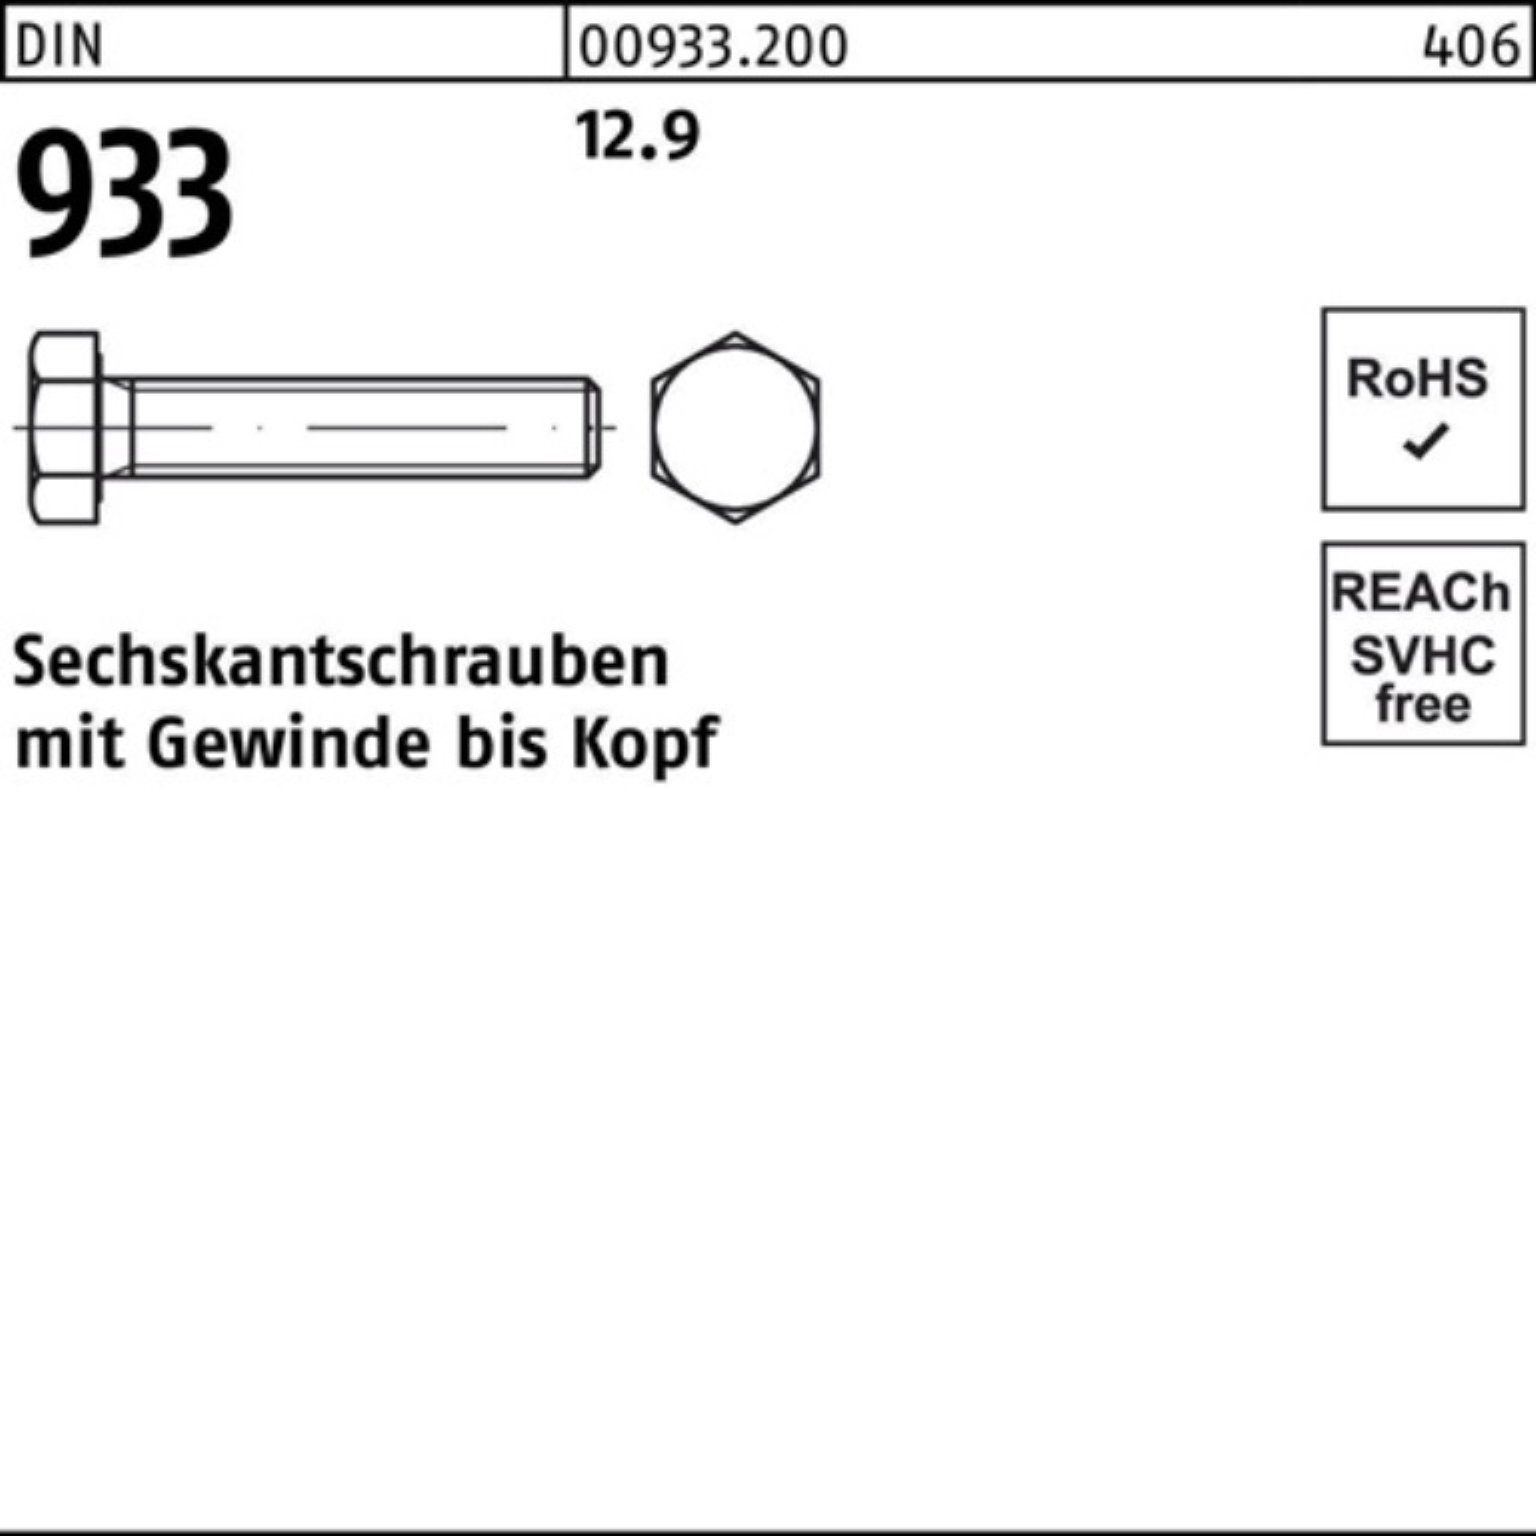 12.9 Pack VG 60 Stück Reyher M8x DIN DIN Sechskantschraube 933 200er 200 Sechskantschraube 933